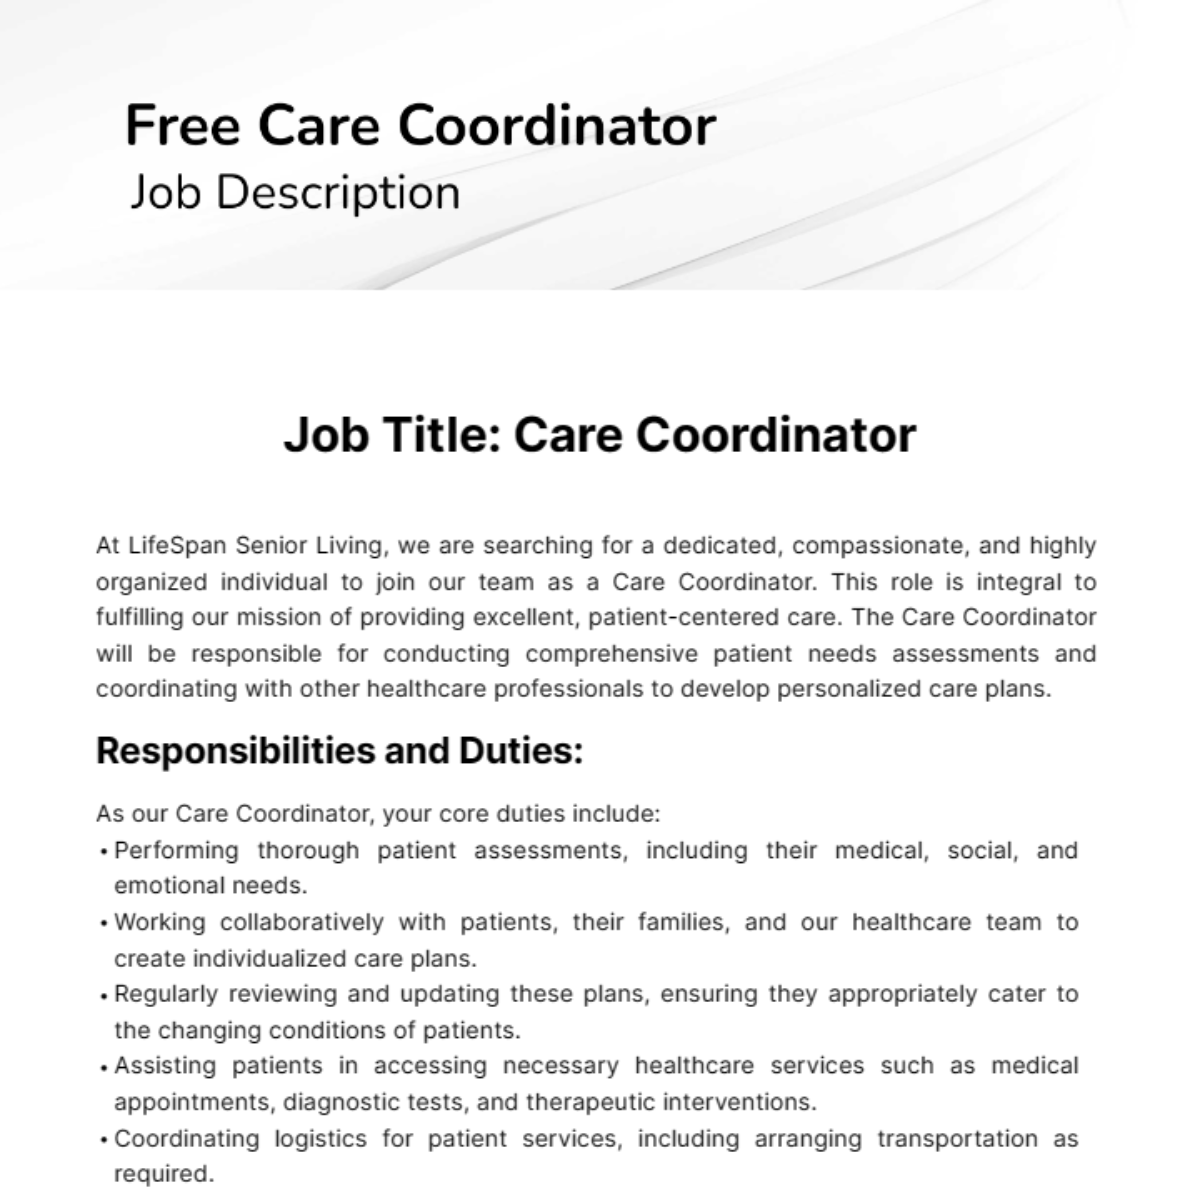 Free Care Coordinator Job Description Template